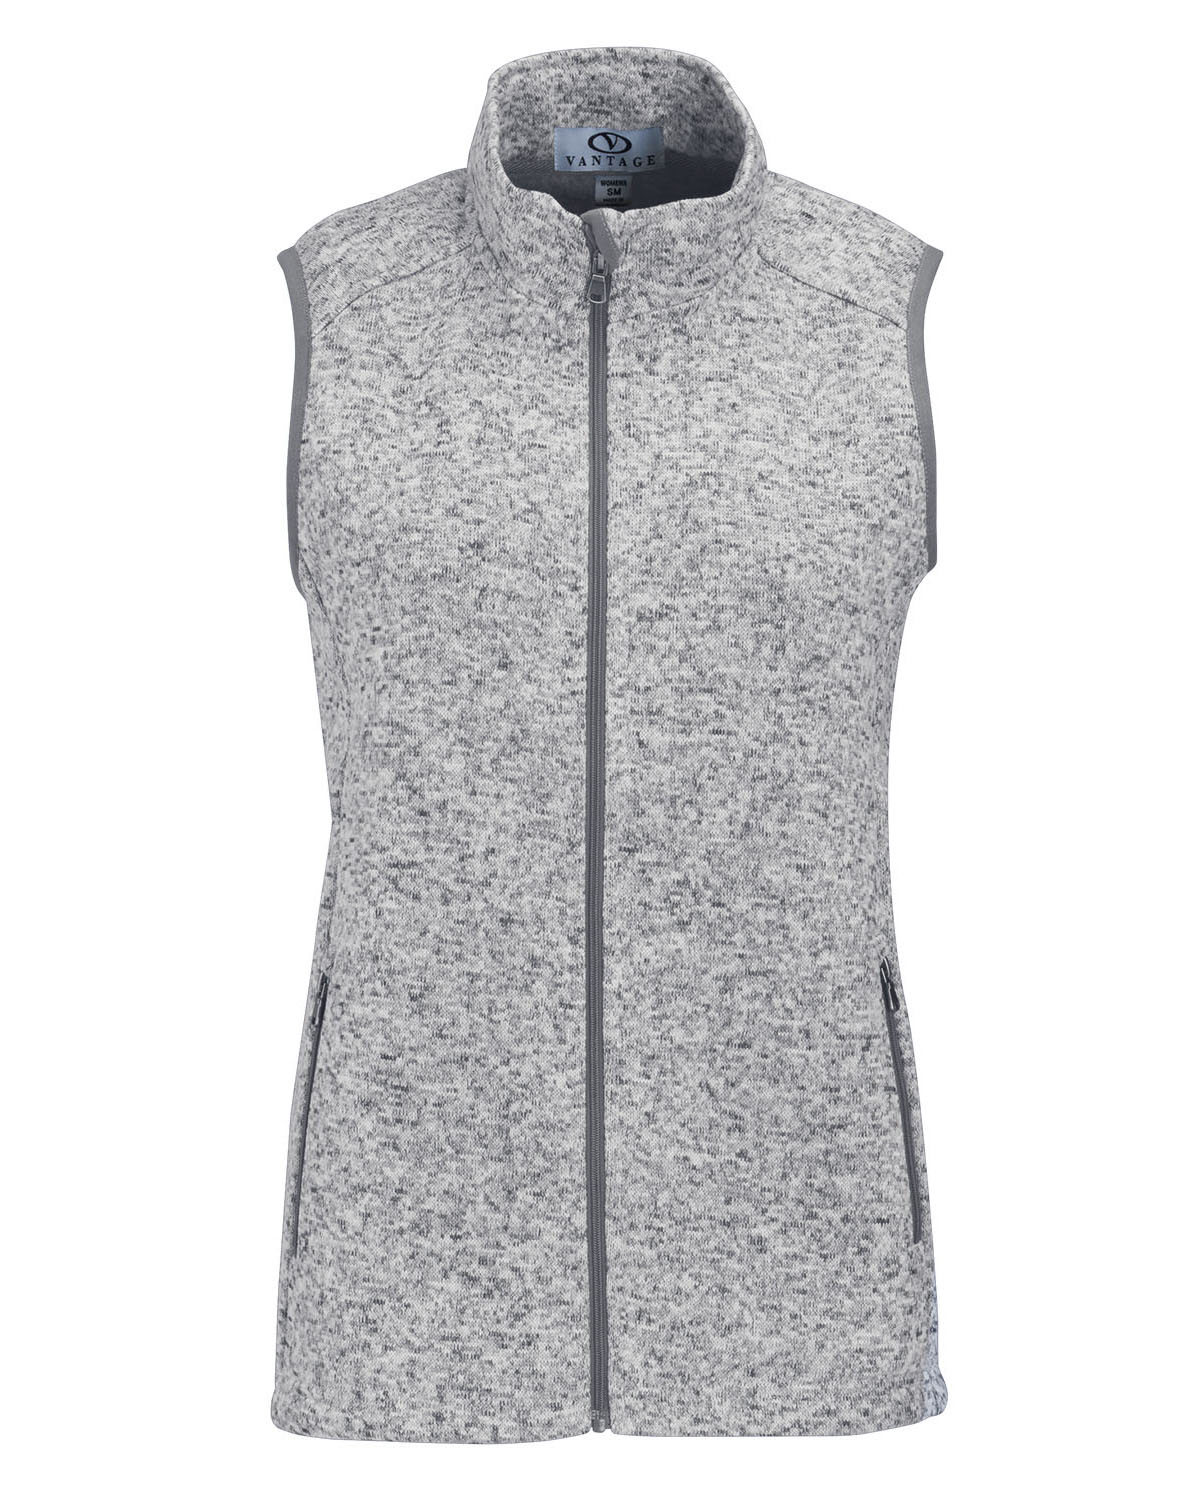 'Vantage 3308 Women’s Summit Sweater-Fleece Vest'